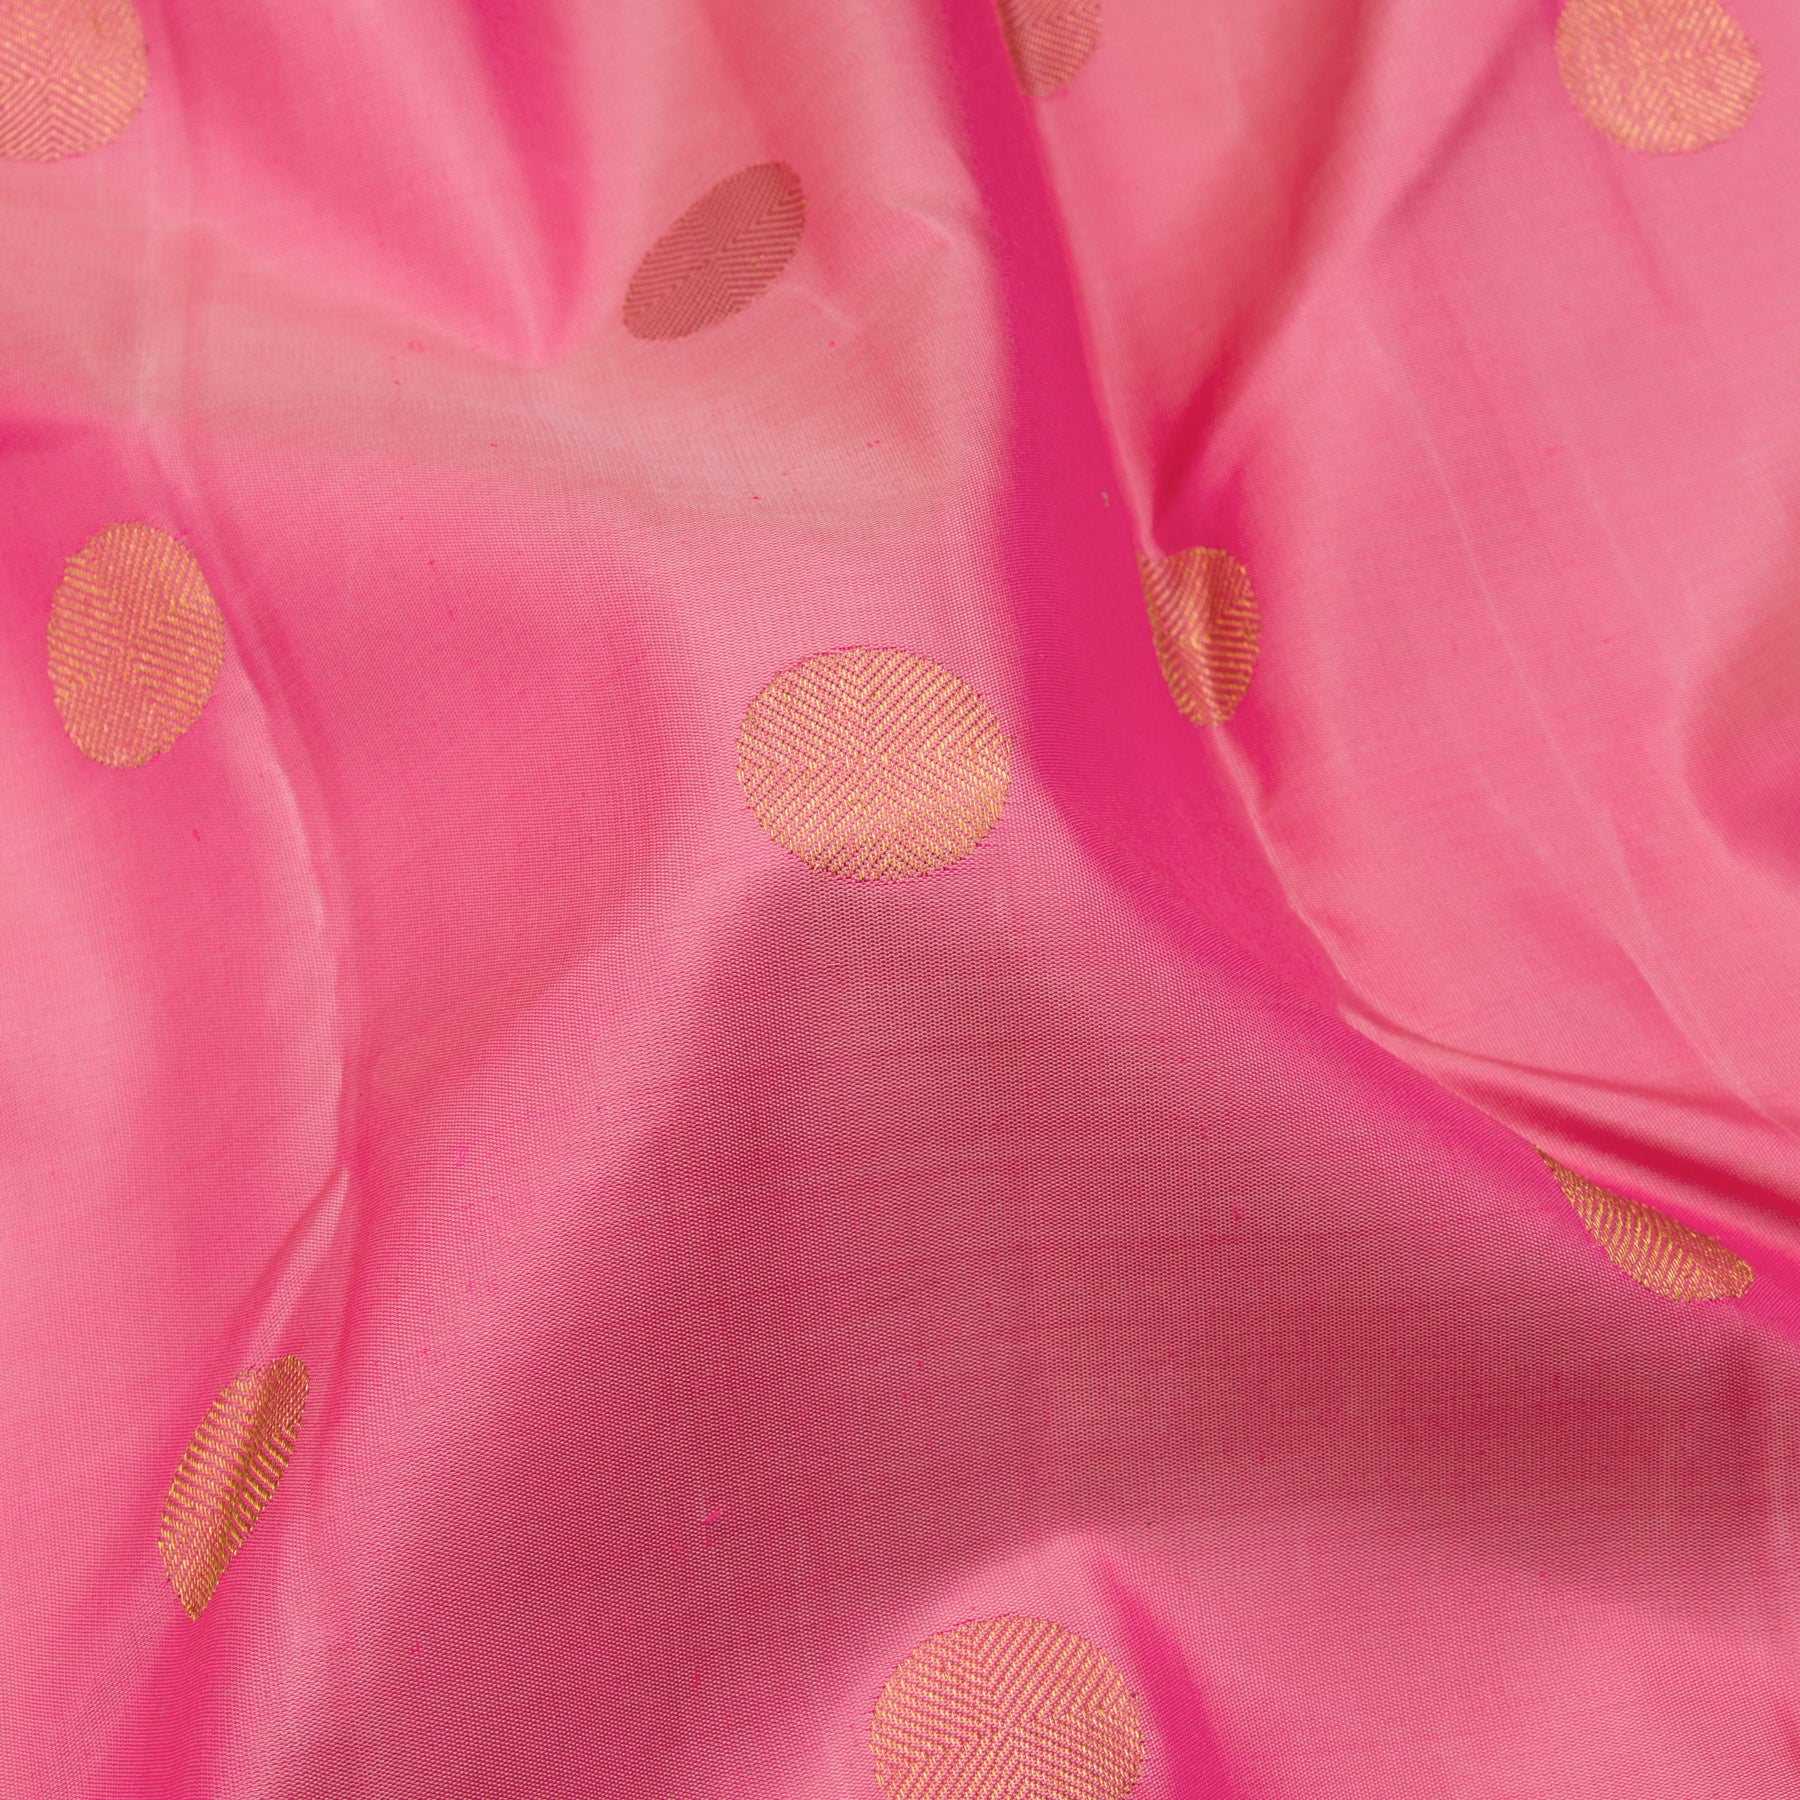 Kanakavalli Kanjivaram Silk Sari 23-611-HS001-13338 - Fabric View